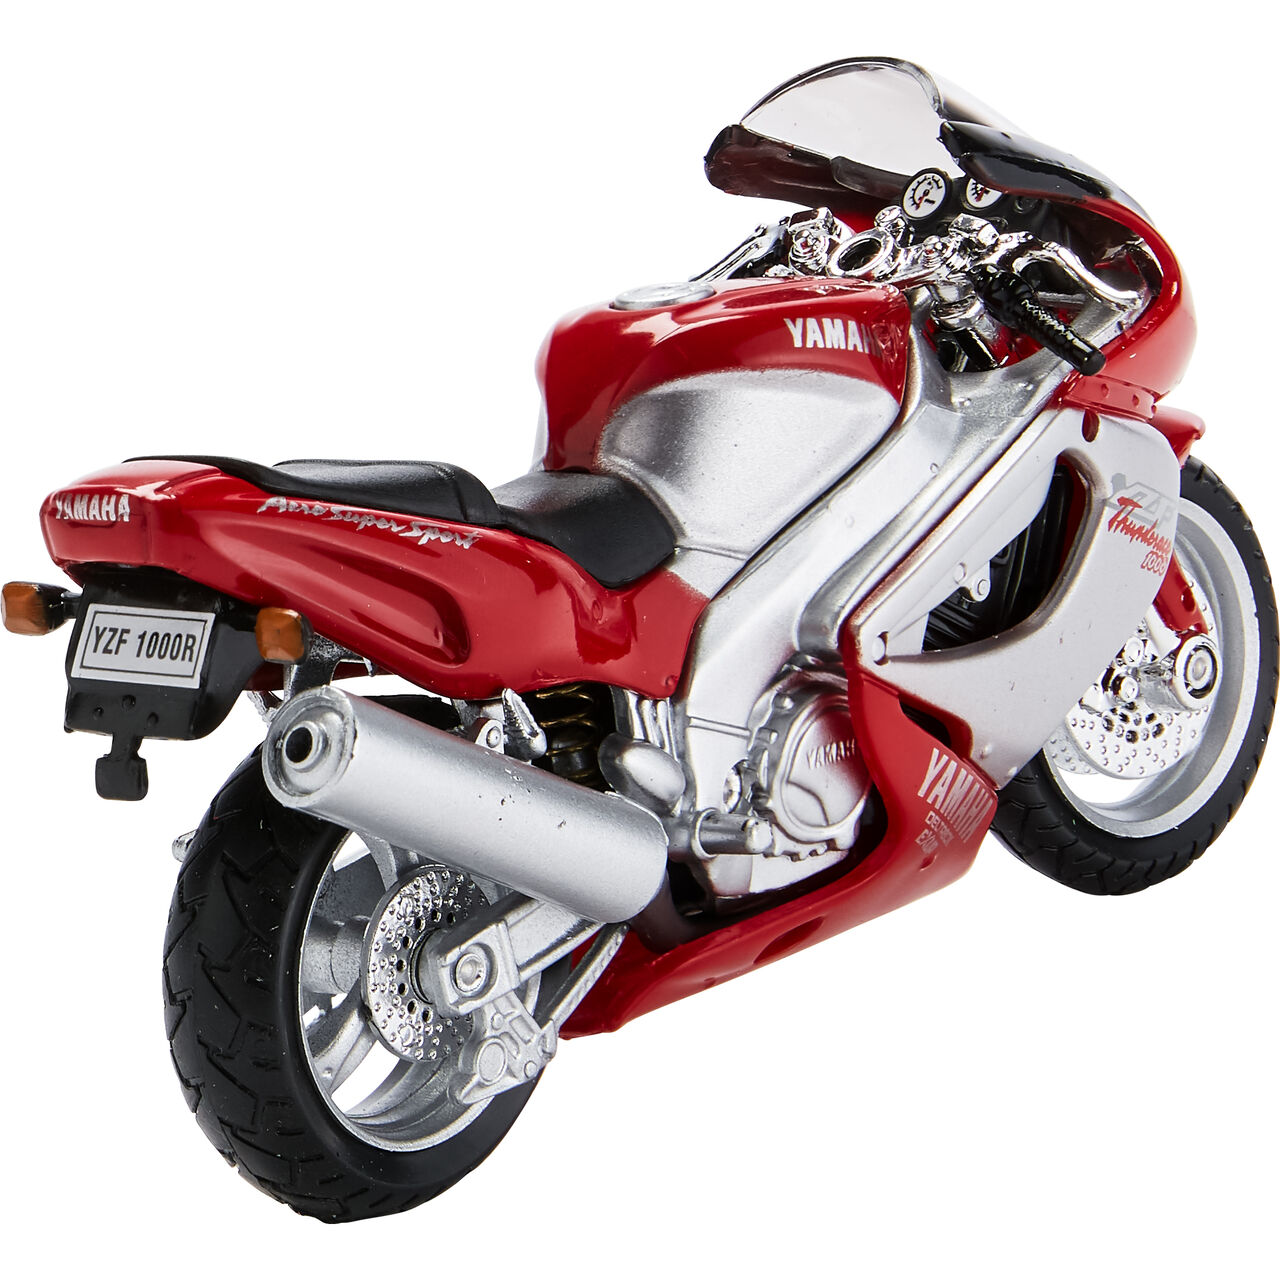 motorcycle model 1:18 Yamaha YZF 1000 R Thunderace